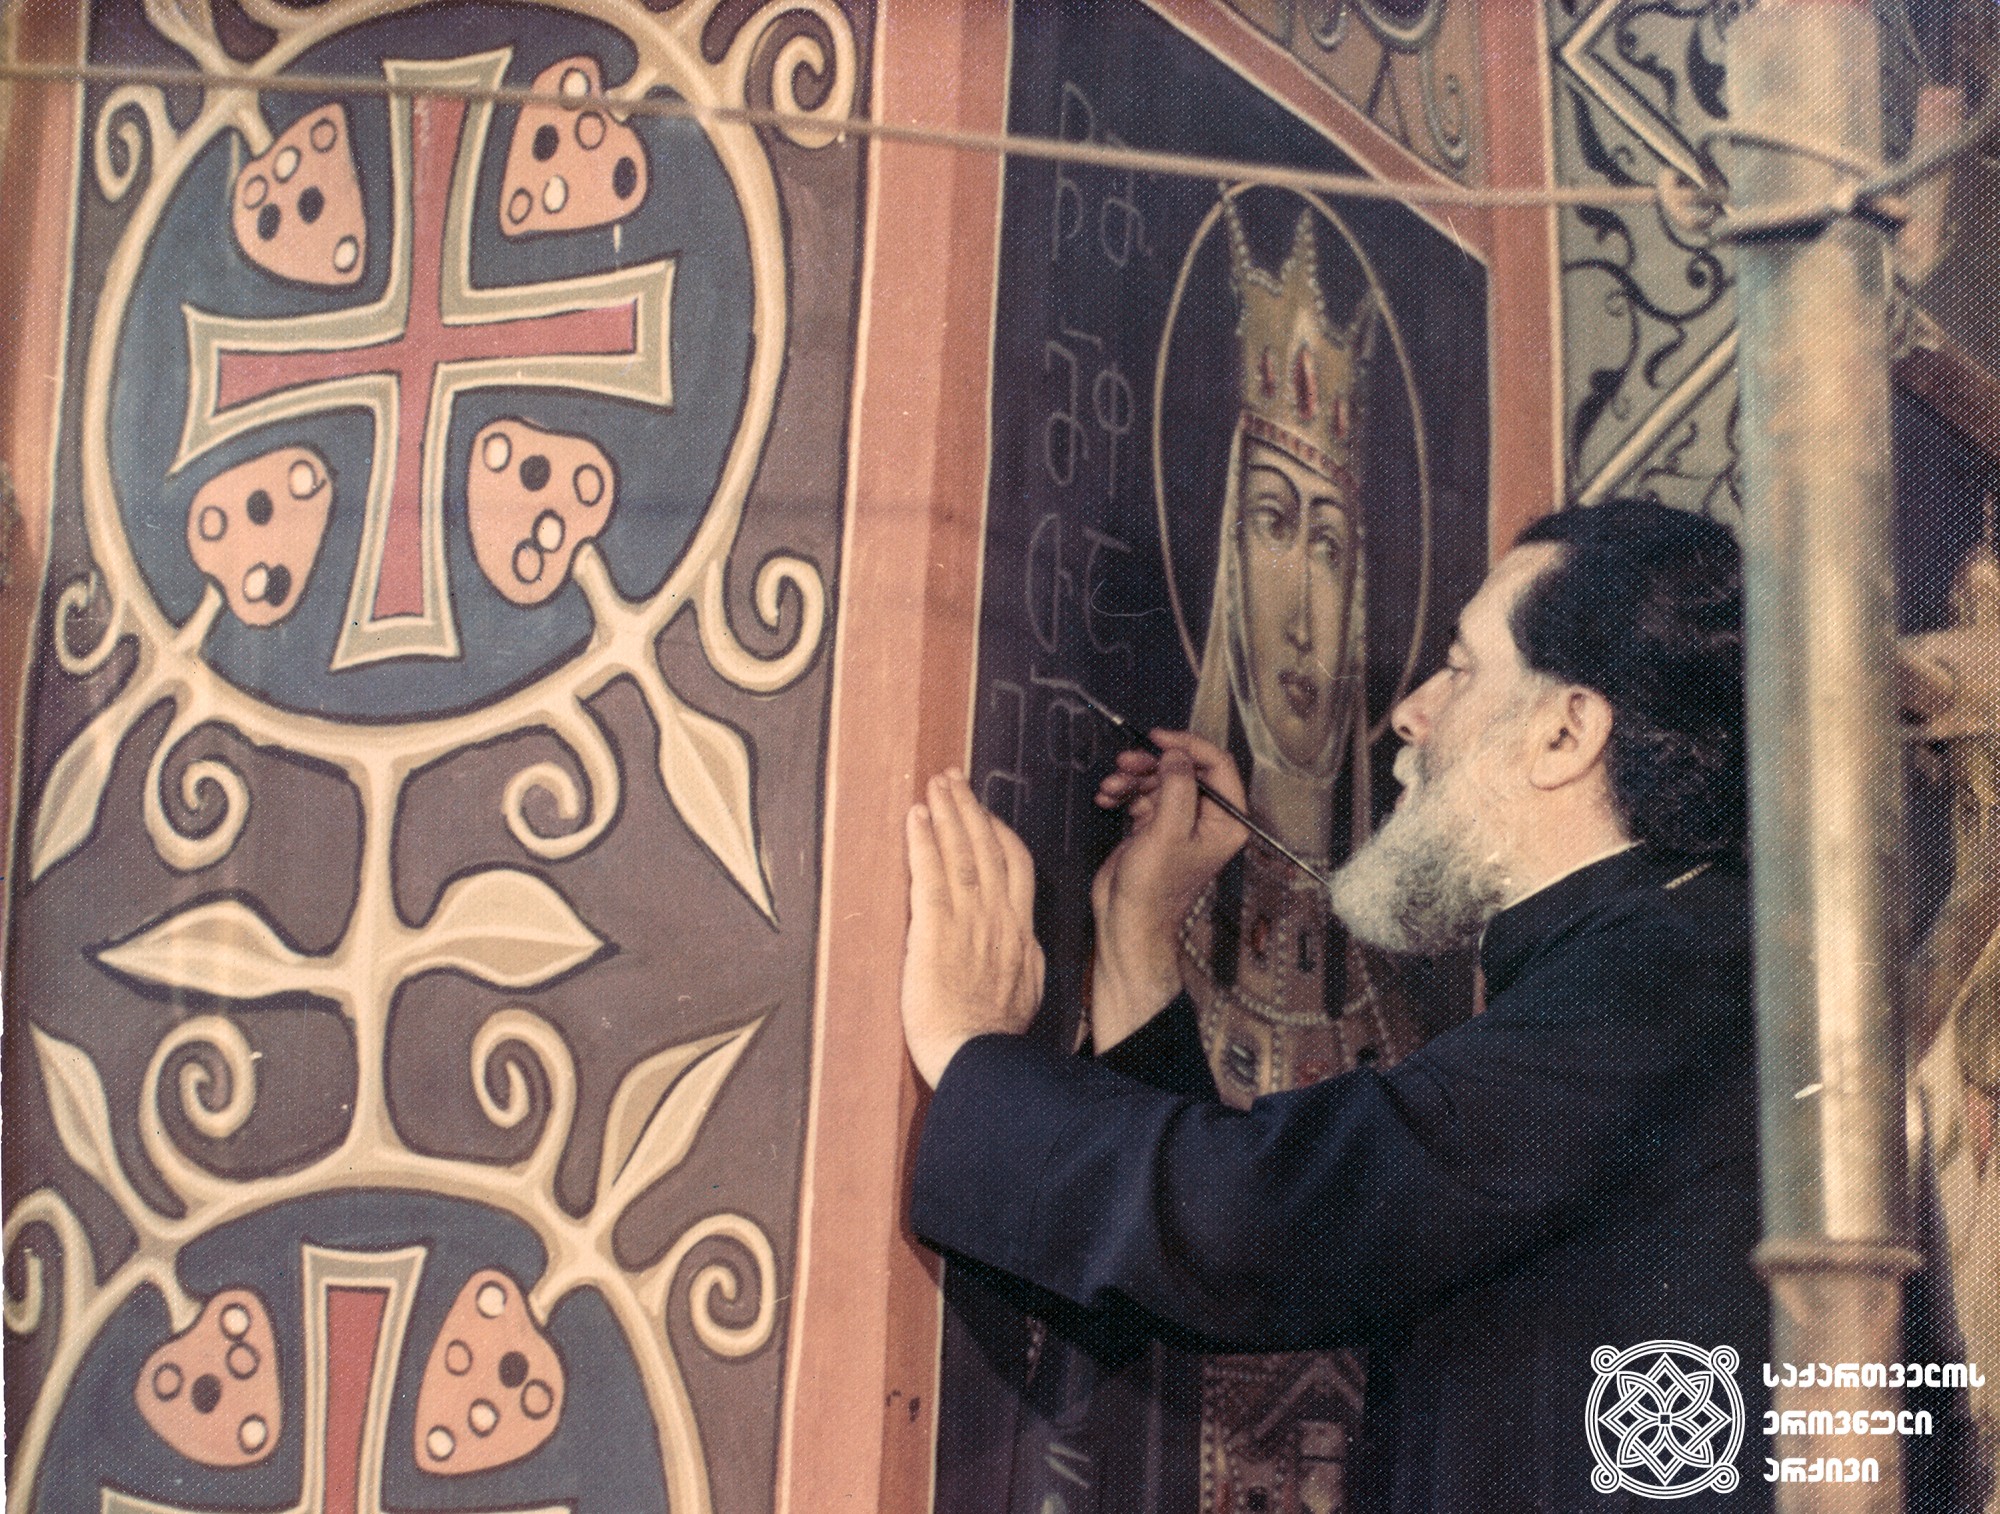 პატრიარქი ილია II ხატავს წმინდა თამარ მეფის ფრესკას დიდუბის ტაძარში. <br>
თბილისი, XX საუკუნის 80-იანი წლები. <br>

Patriarch Ilia II paints a fresco of King Tamar in Didube Cathedral. <br>
Tbilisi, 80s of the 20th century.